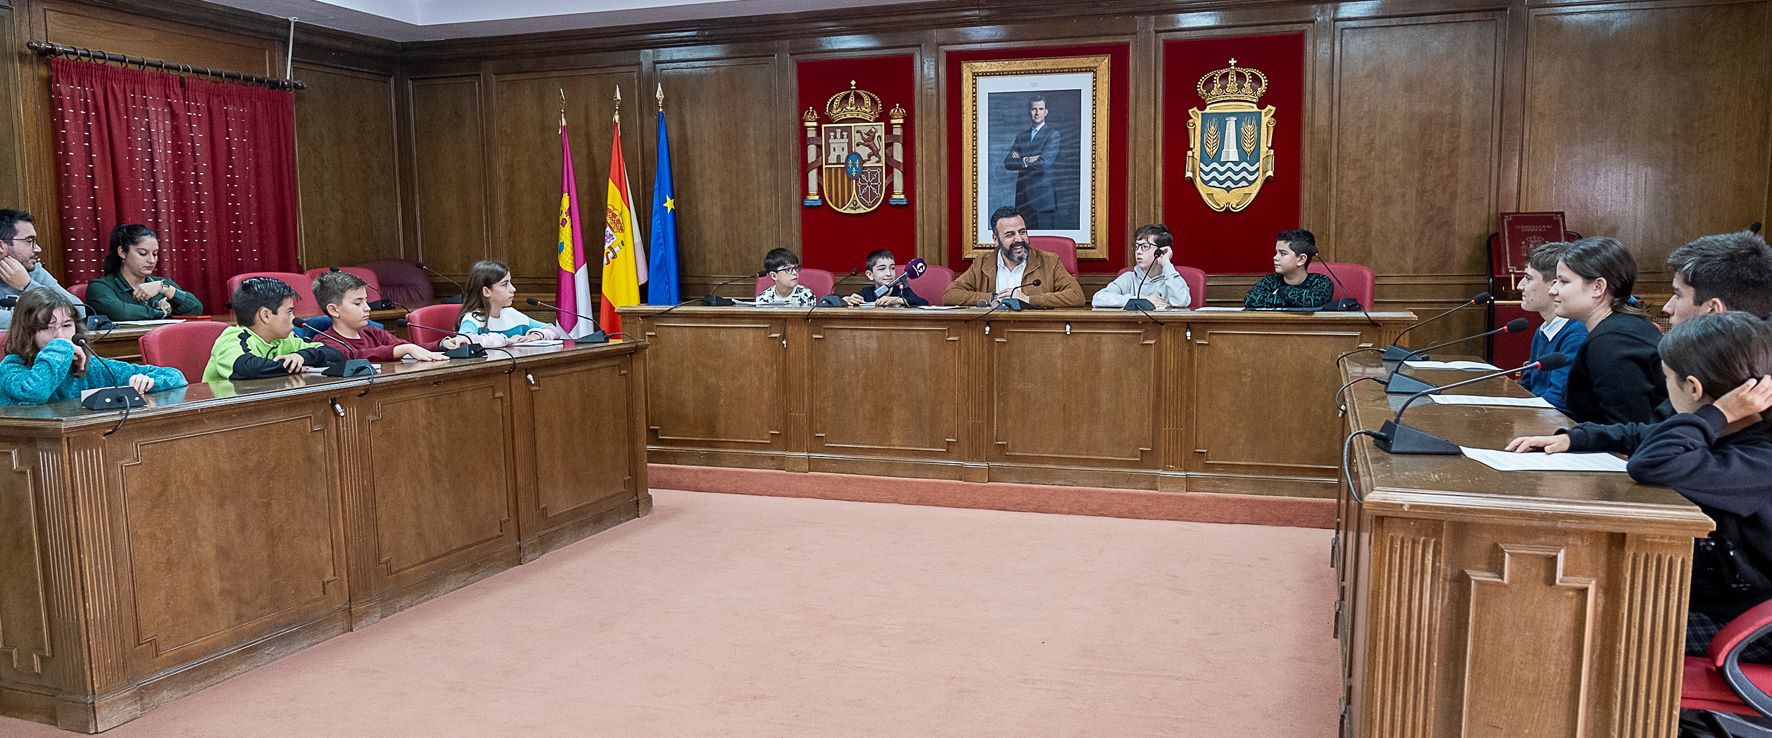 El Ayuntamiento ha recibido la visita del Consejo Local de la Infancia y la Adolescencia de la ciudad//Imagen: Ayto. Azuqueca de Henares.